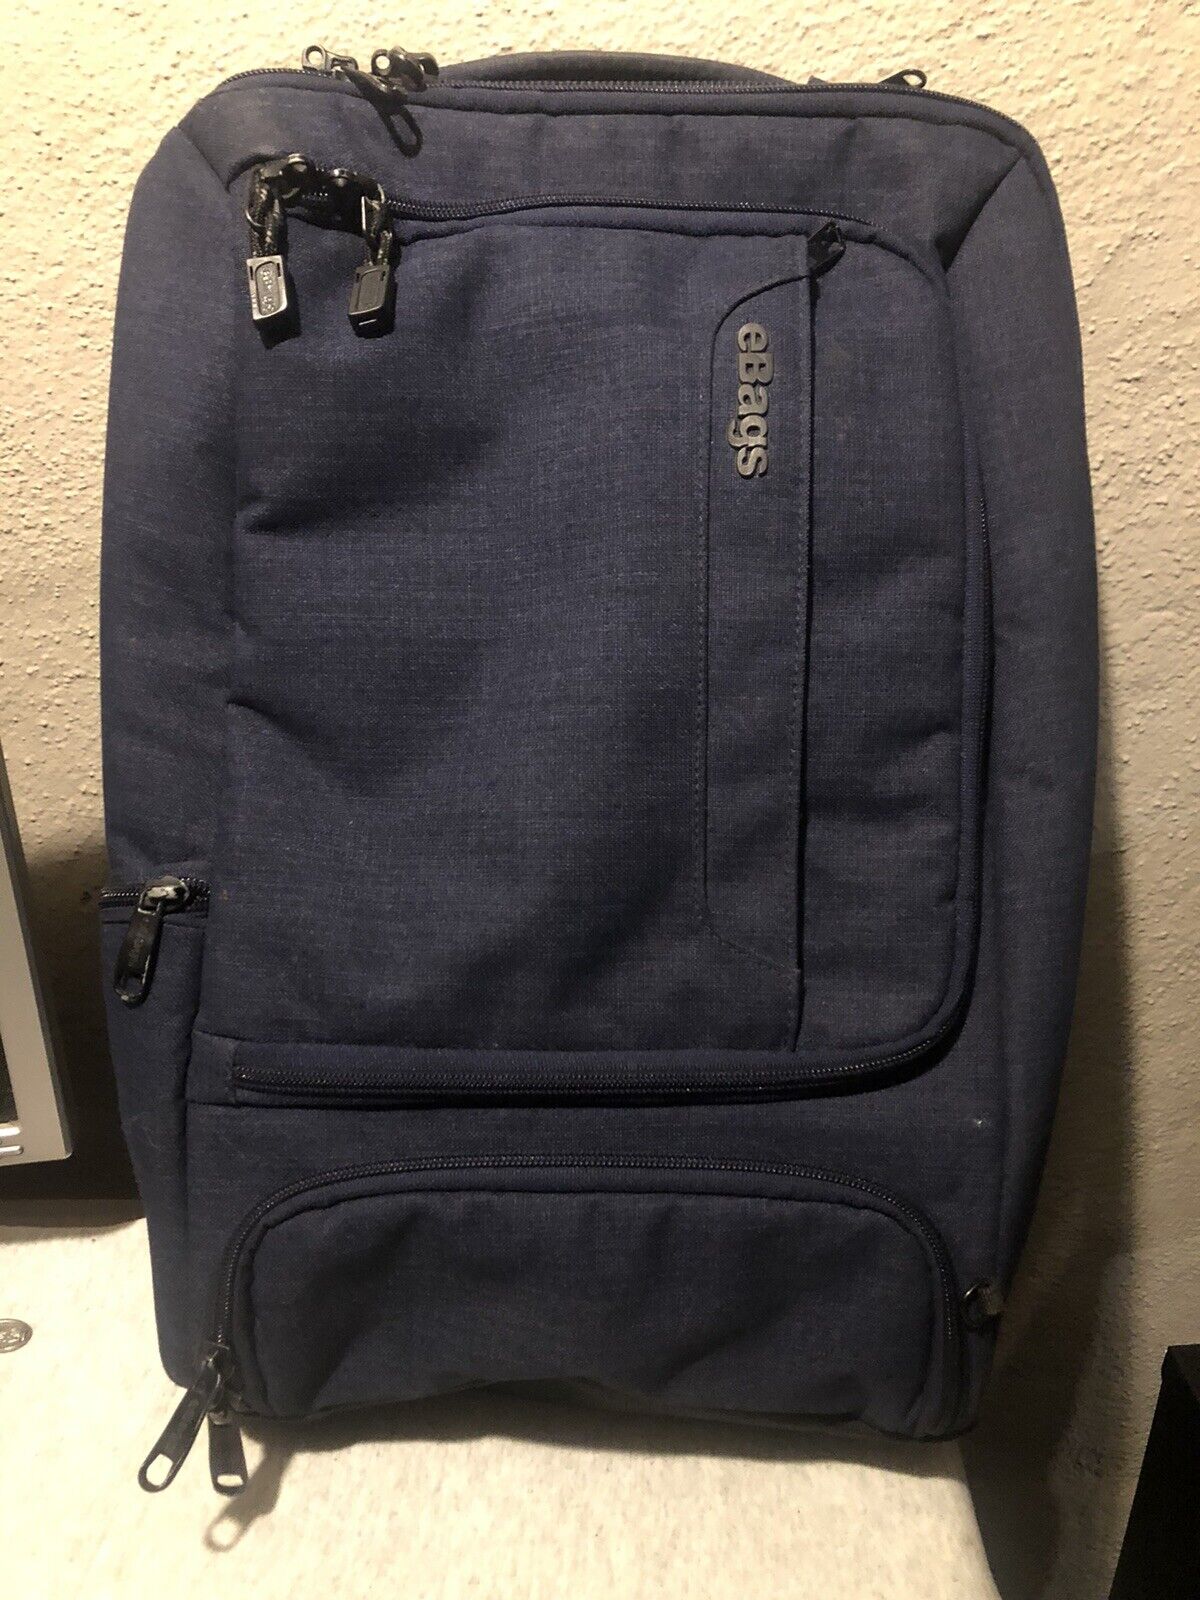 eBags Professional Slim Laptop Backpack Weekender navy blue